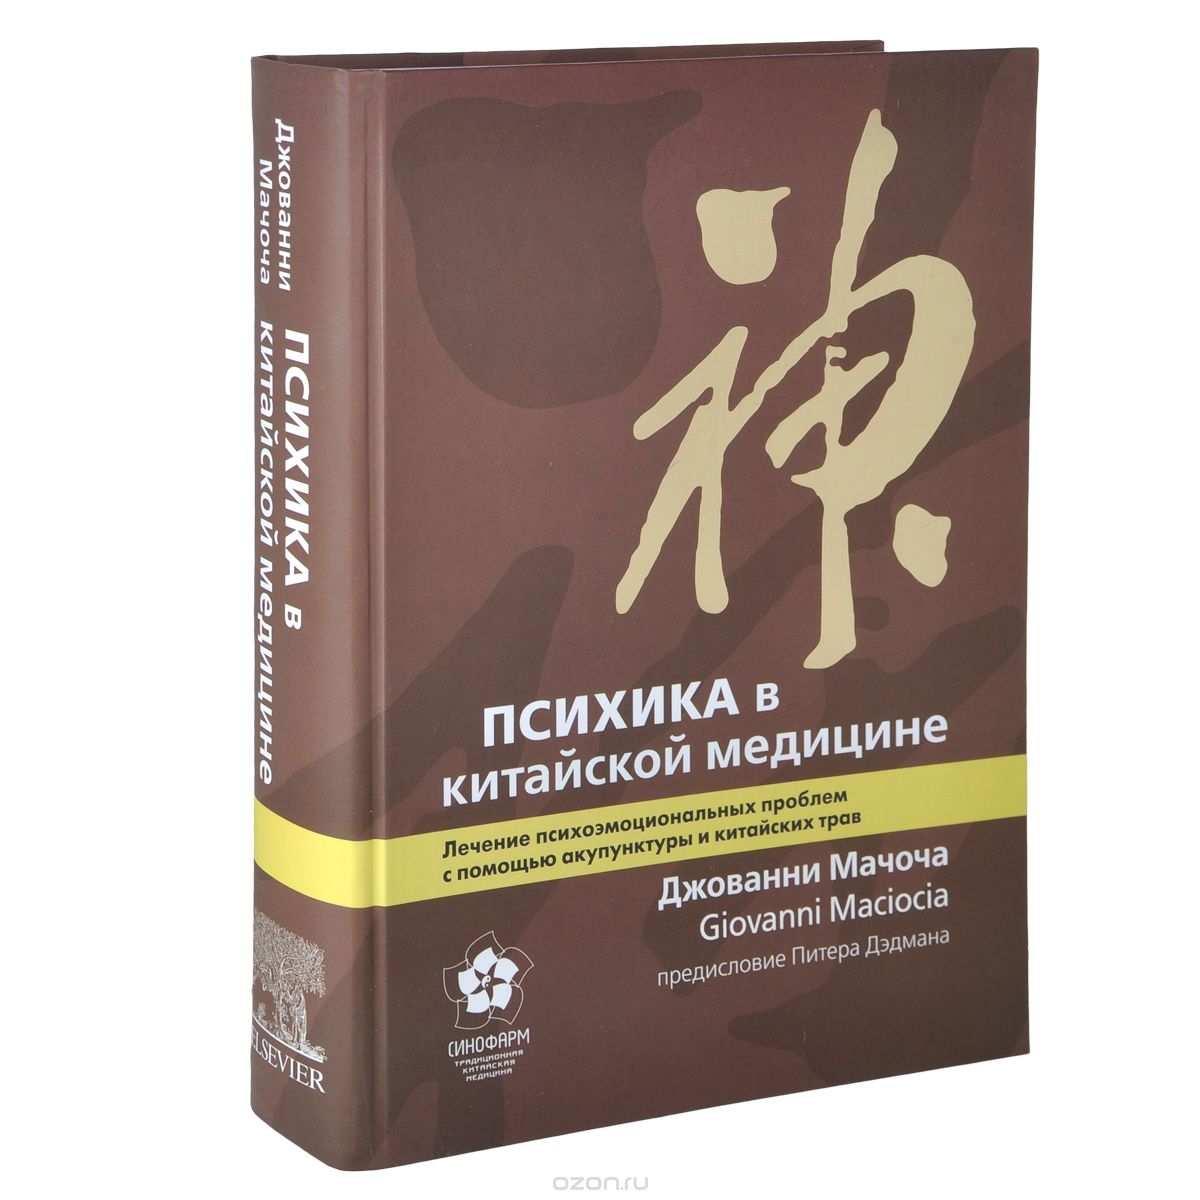 Скачать книгу "Психика в китайской медицине. Лечение психоэмоциональных проблем с помощью акупунктуры и китайских трав, Джованни Мачоча"